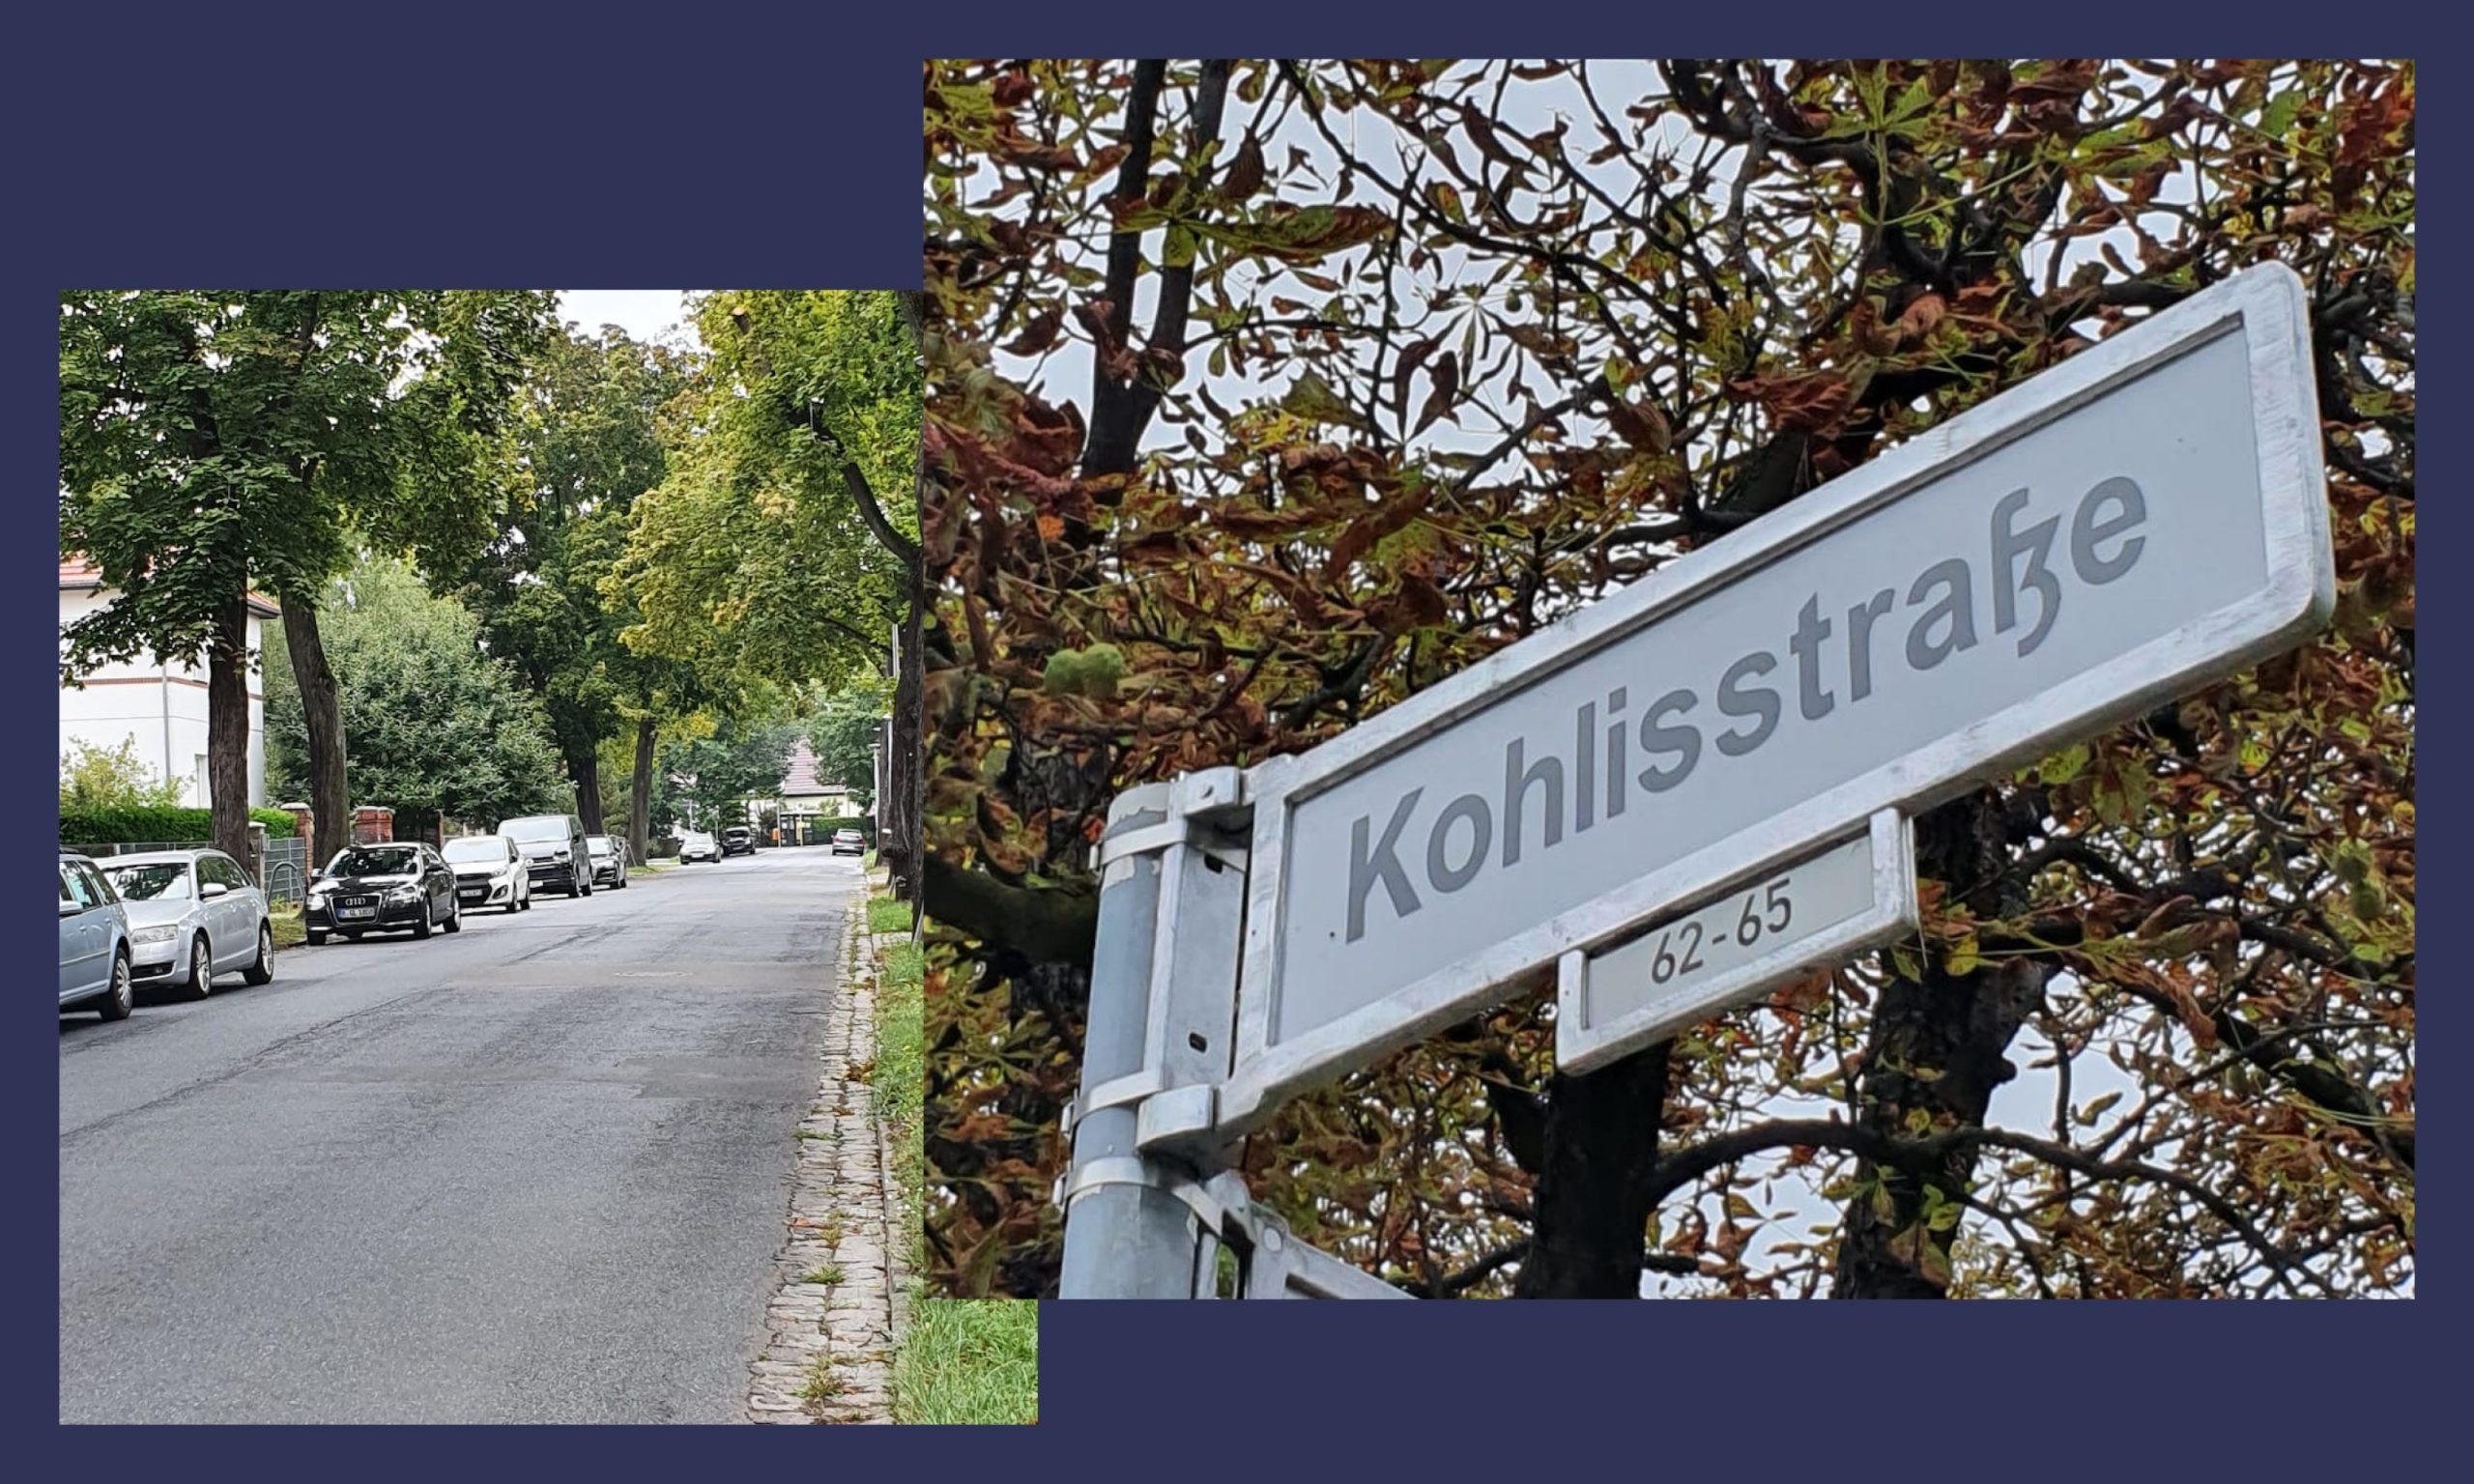 Gute Nachricht für die Anwohner der Kohlis- und Ulmenstraße: Um das Wildparken in den Straßen einzudämmen, werden künftig Halte- und Parkverbotsschilder jeweils 15 Meter vor den Querungen aufgestellt. Zudem wird das Ordnungsamt...